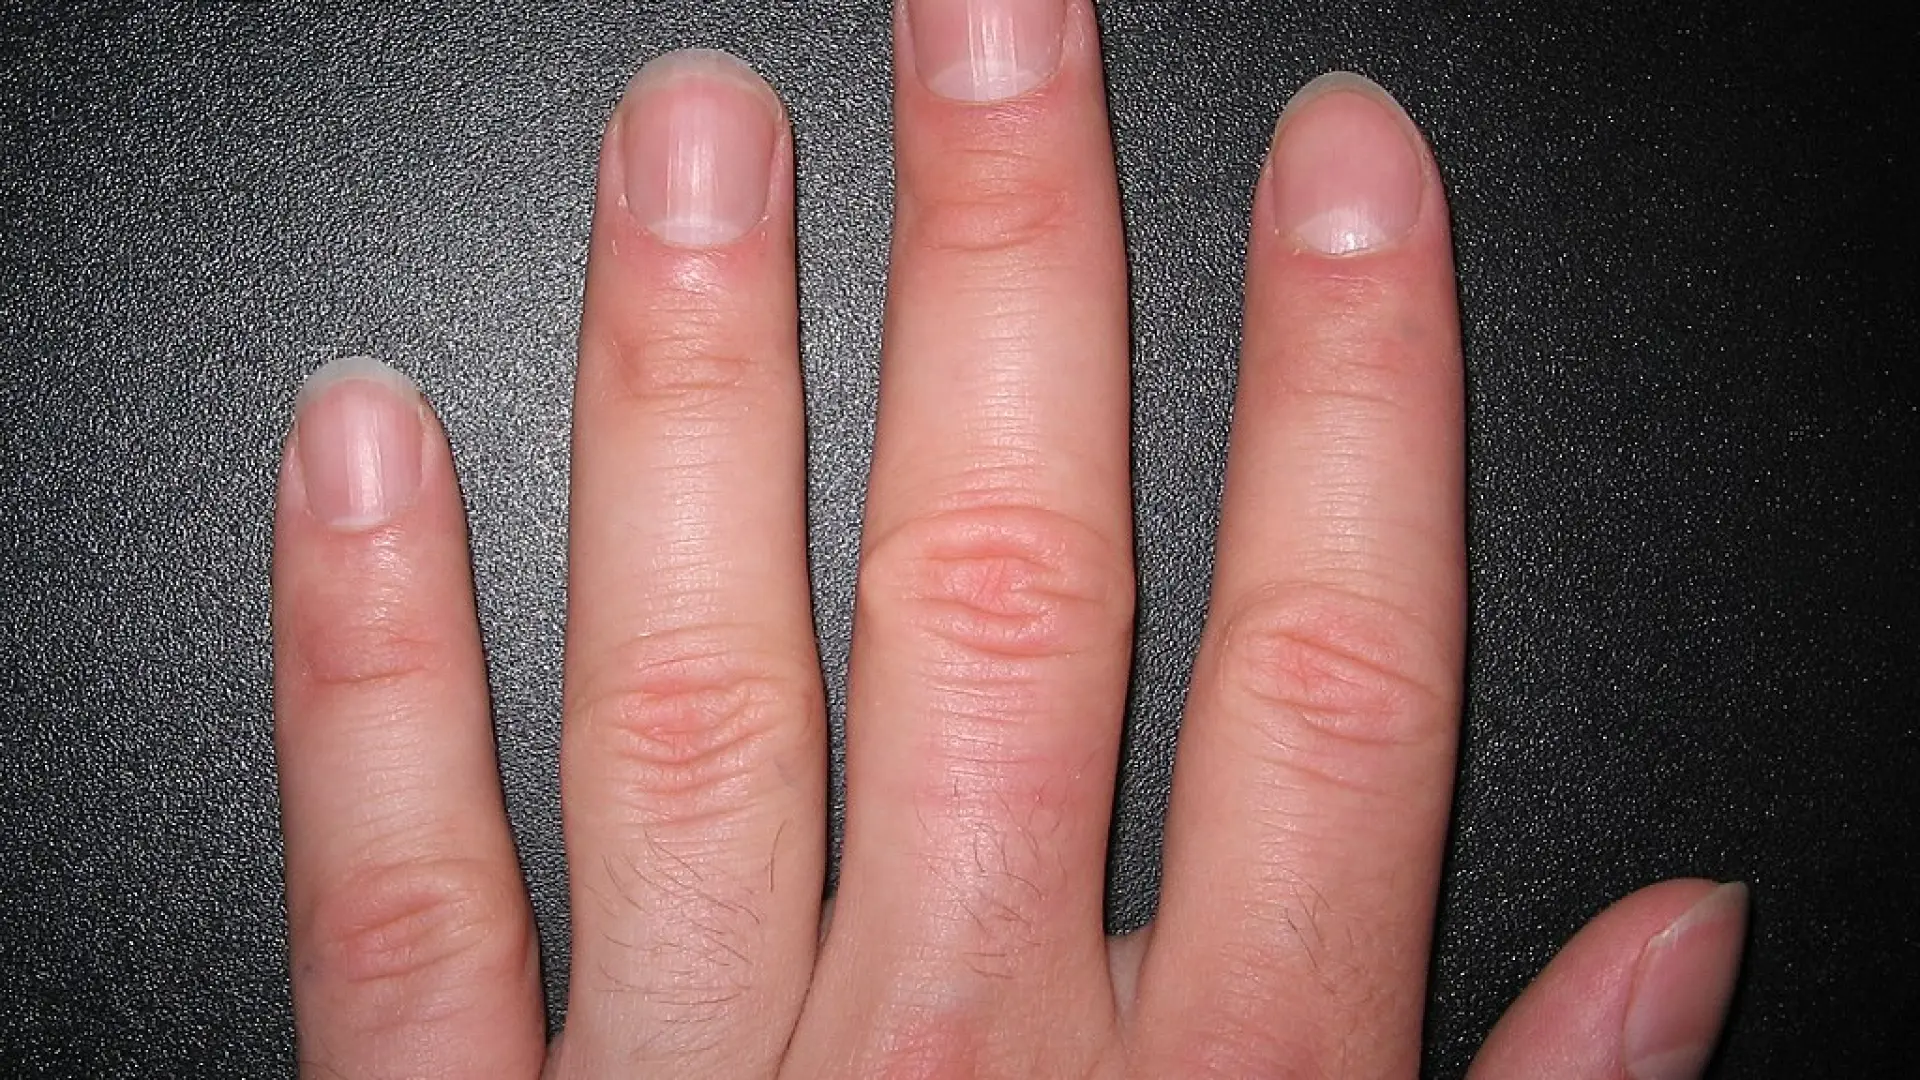 Lo que nunca debes hacer con tus uñas, según una dermatóloga: "No seas cavernícola"